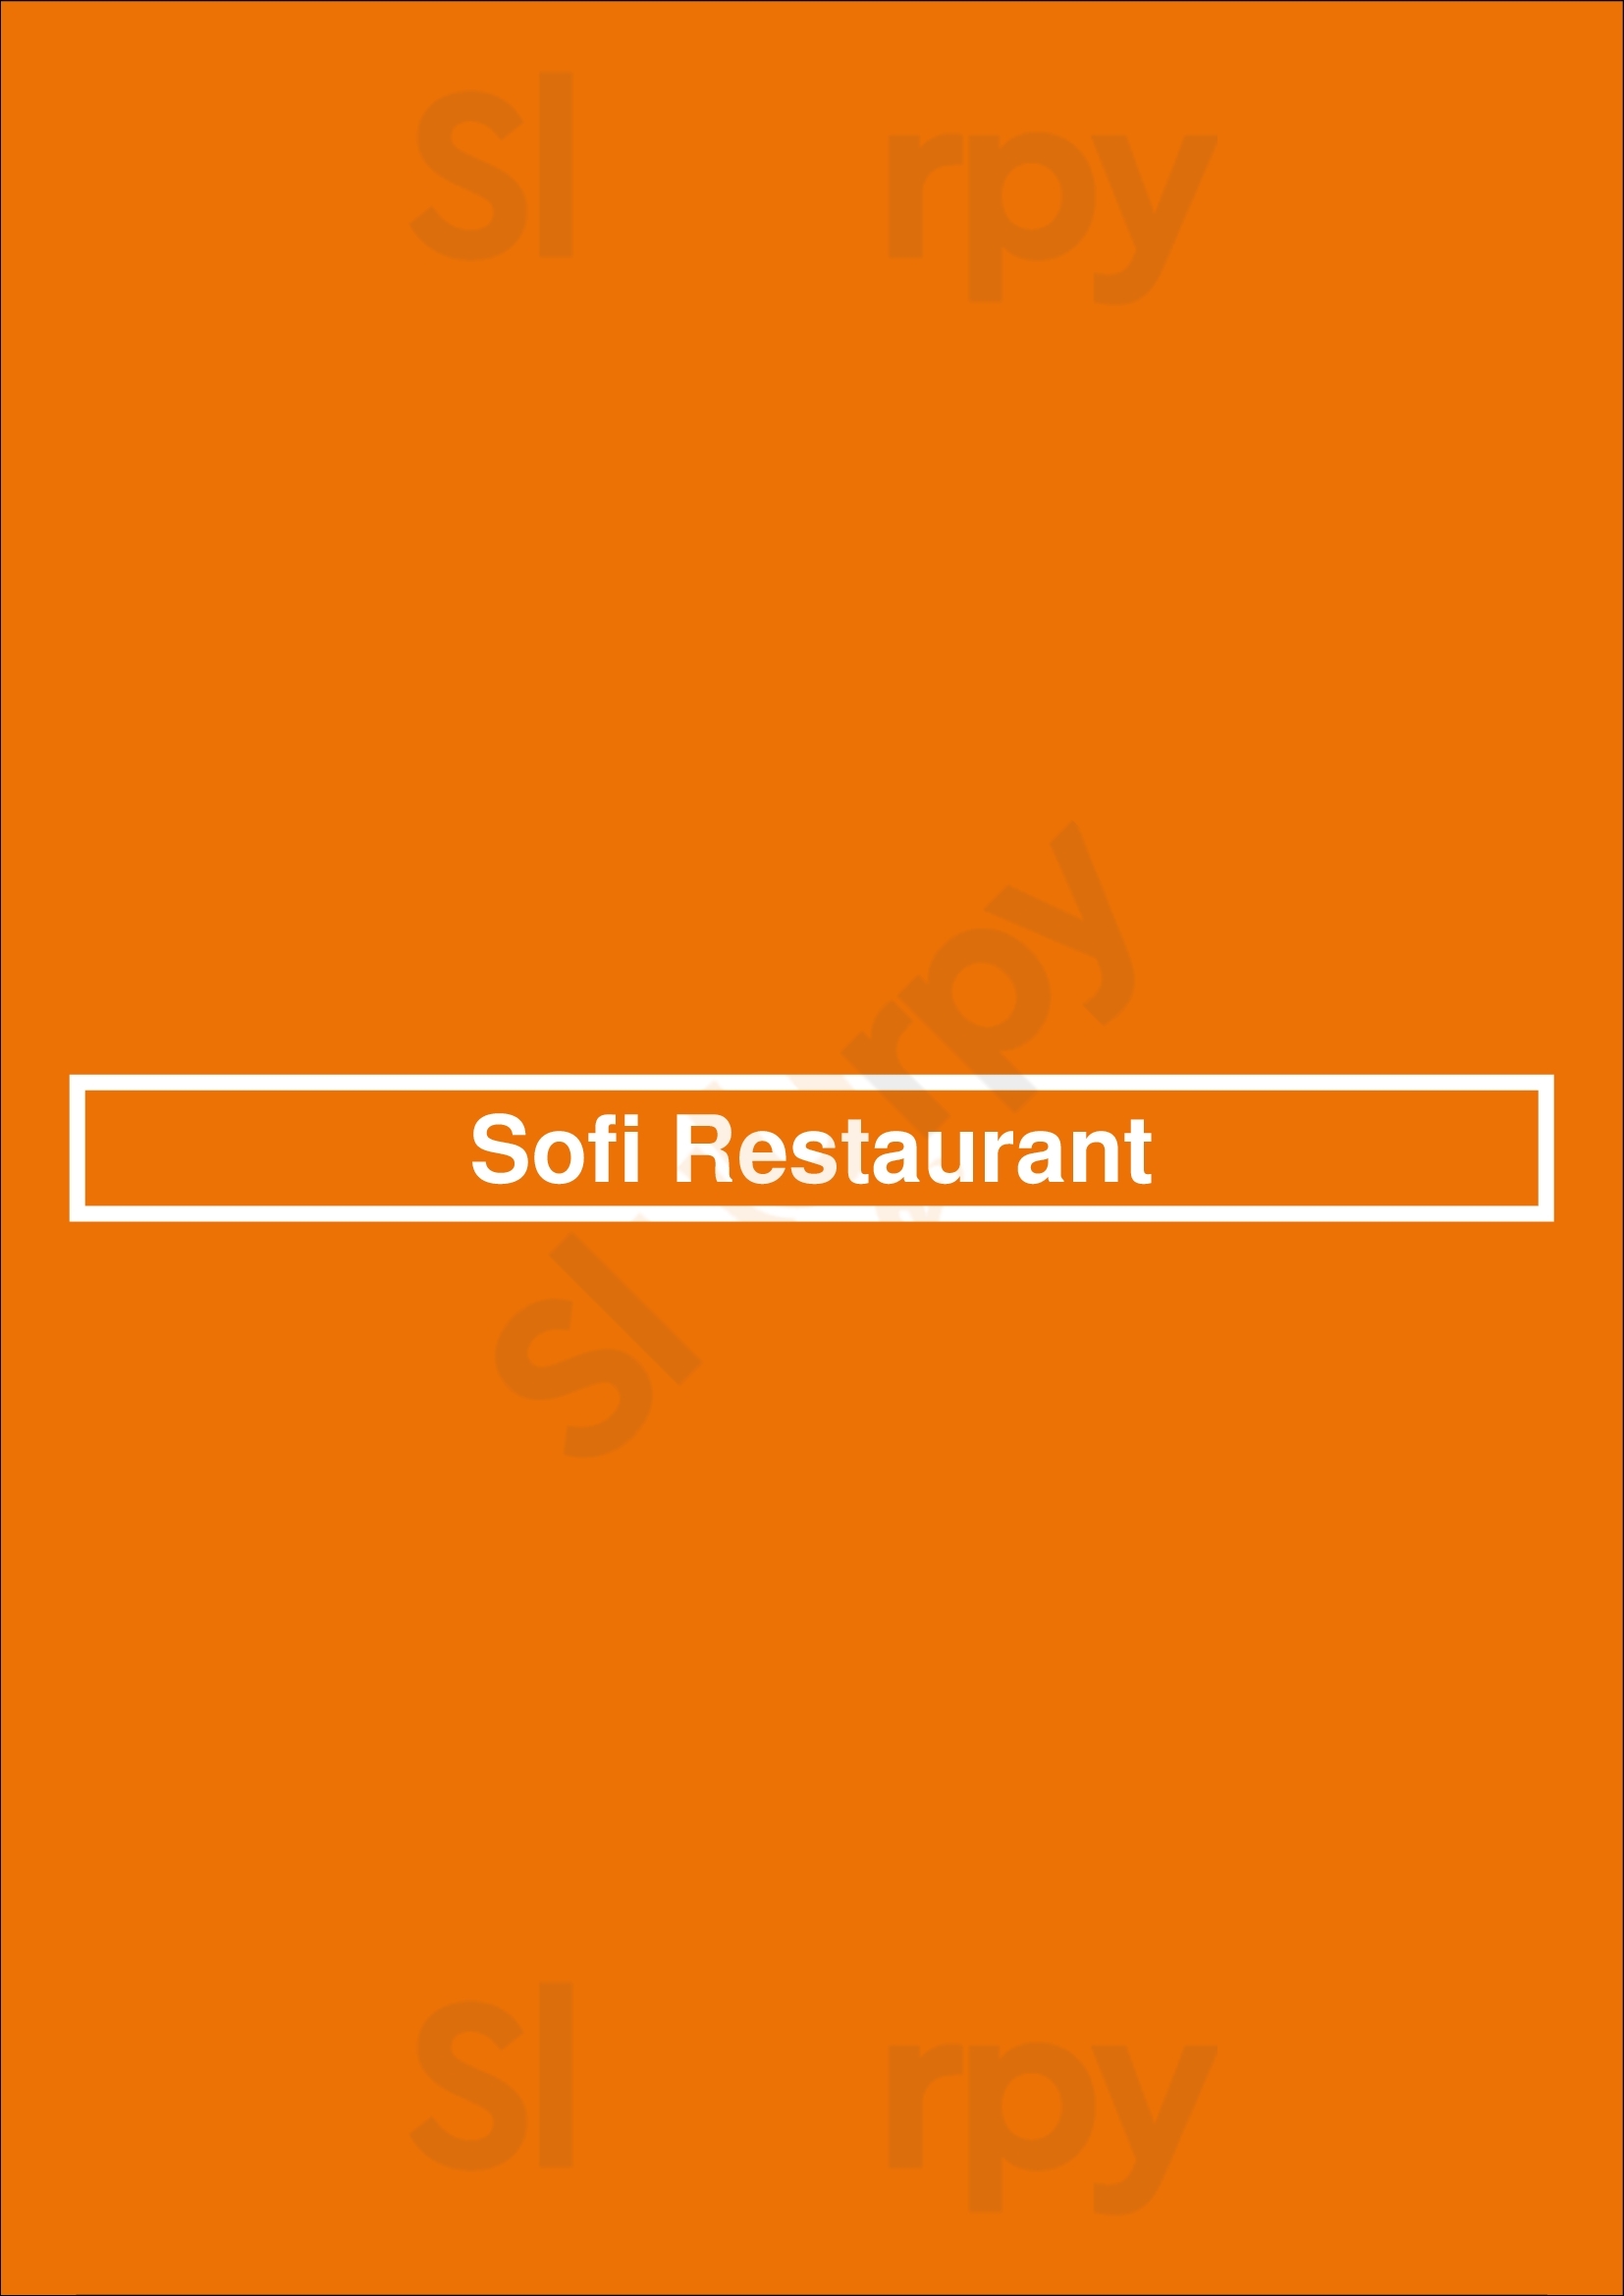 Sofi Restaurant Chicago Menu - 1